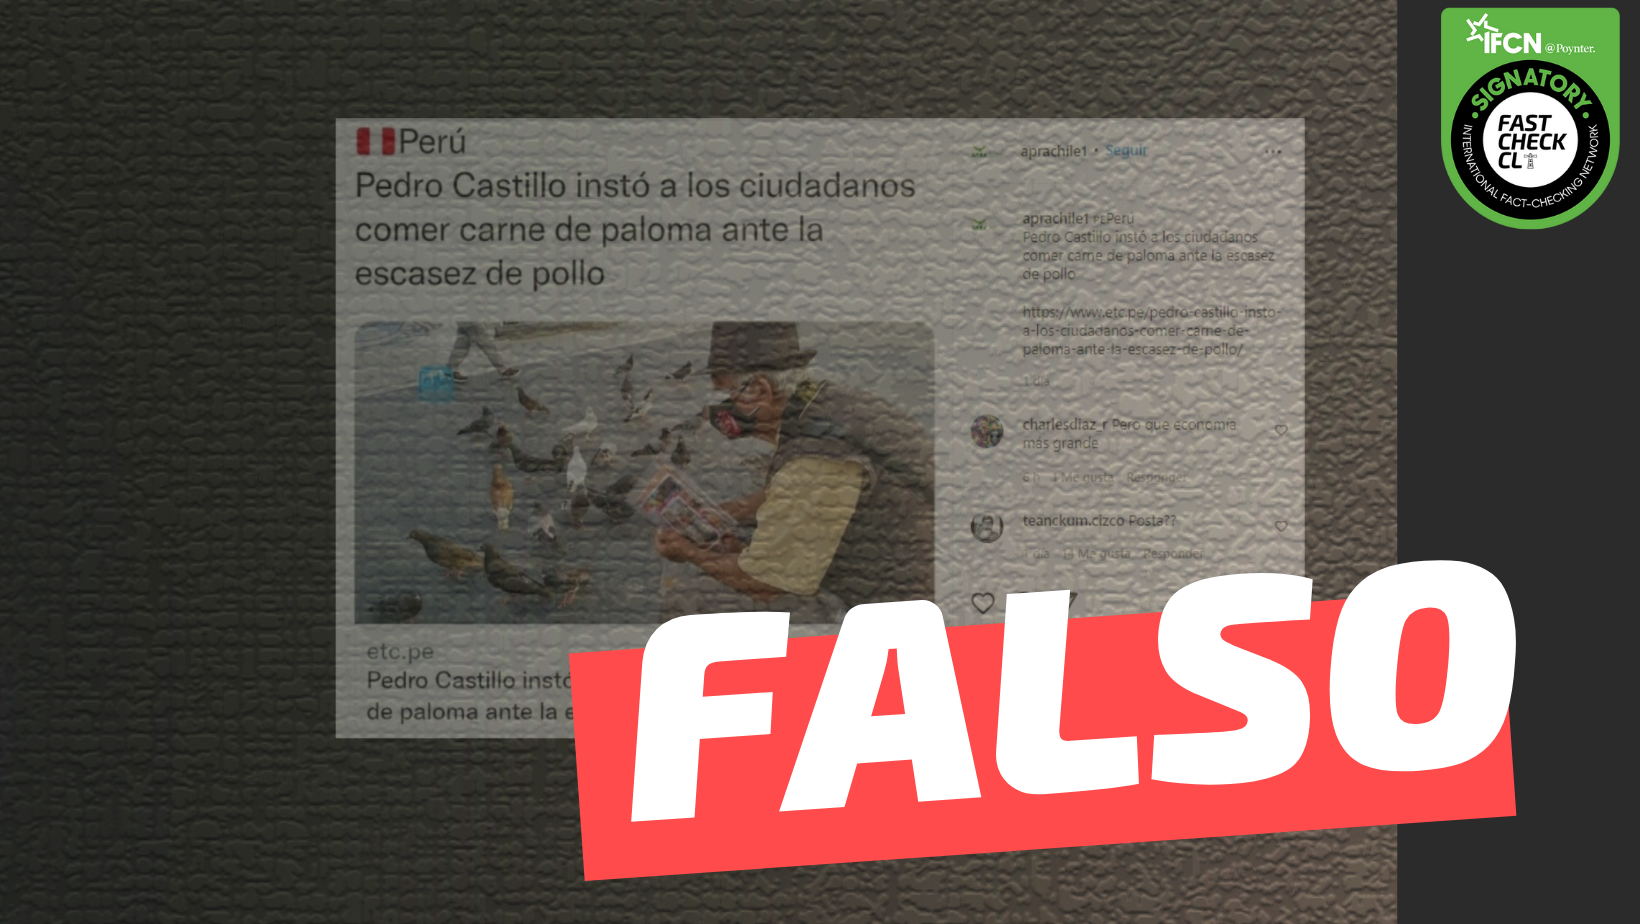 You are currently viewing “Pedro Castillo inst贸 a los ciudadanos comer carne de paloma ante la escasez de pollo”: #Falso